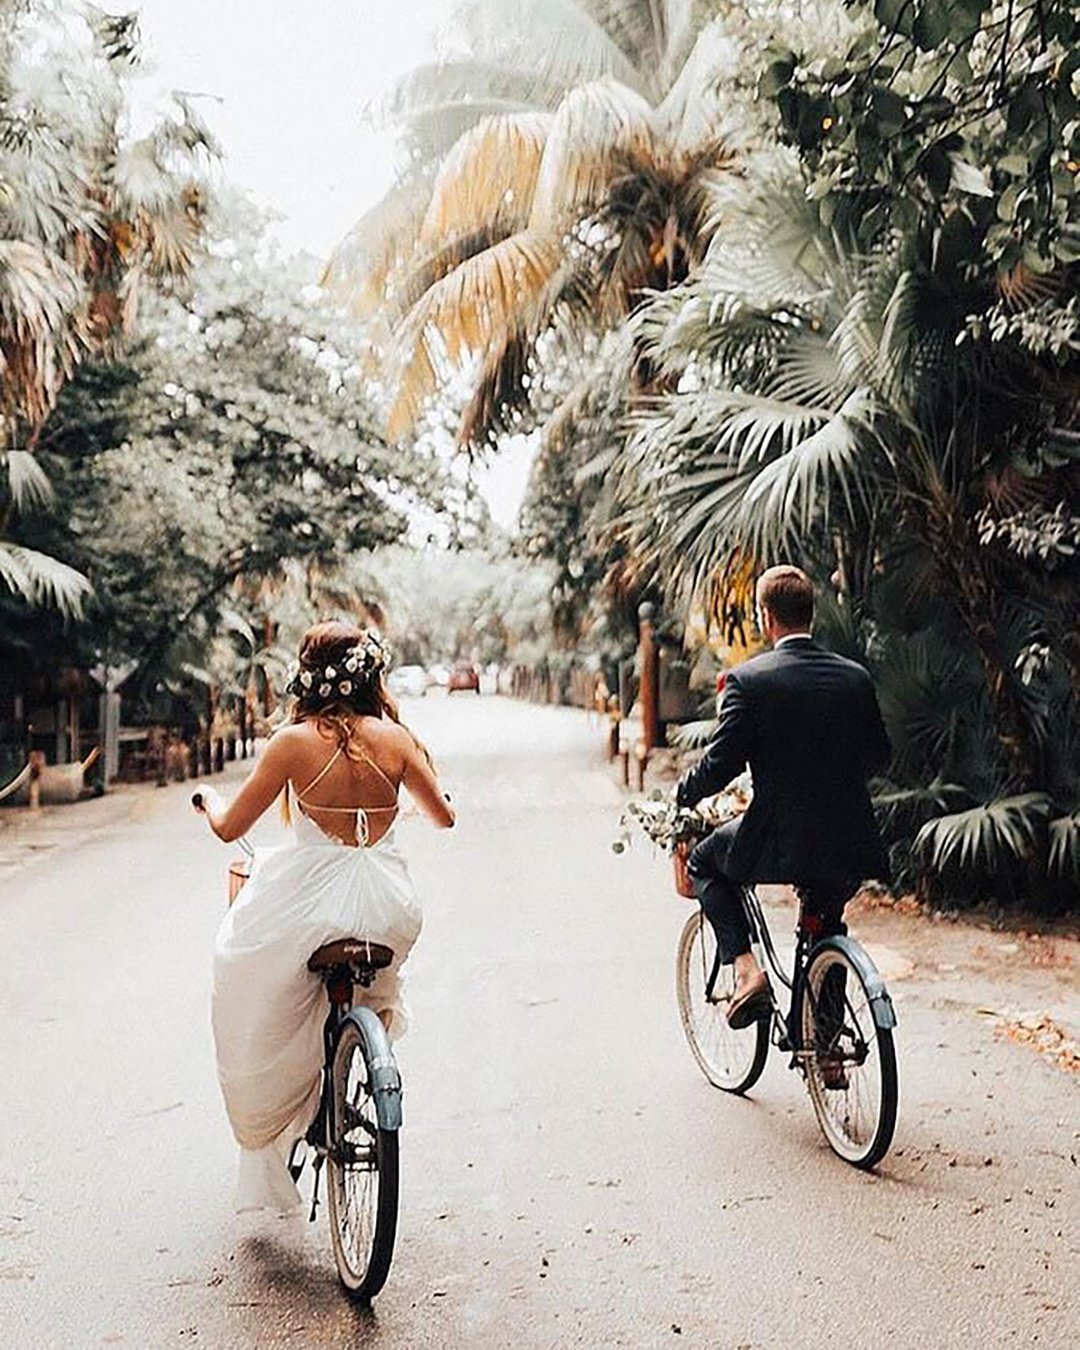 creative wedding photo ideas poses couple and bike melissamarshallx